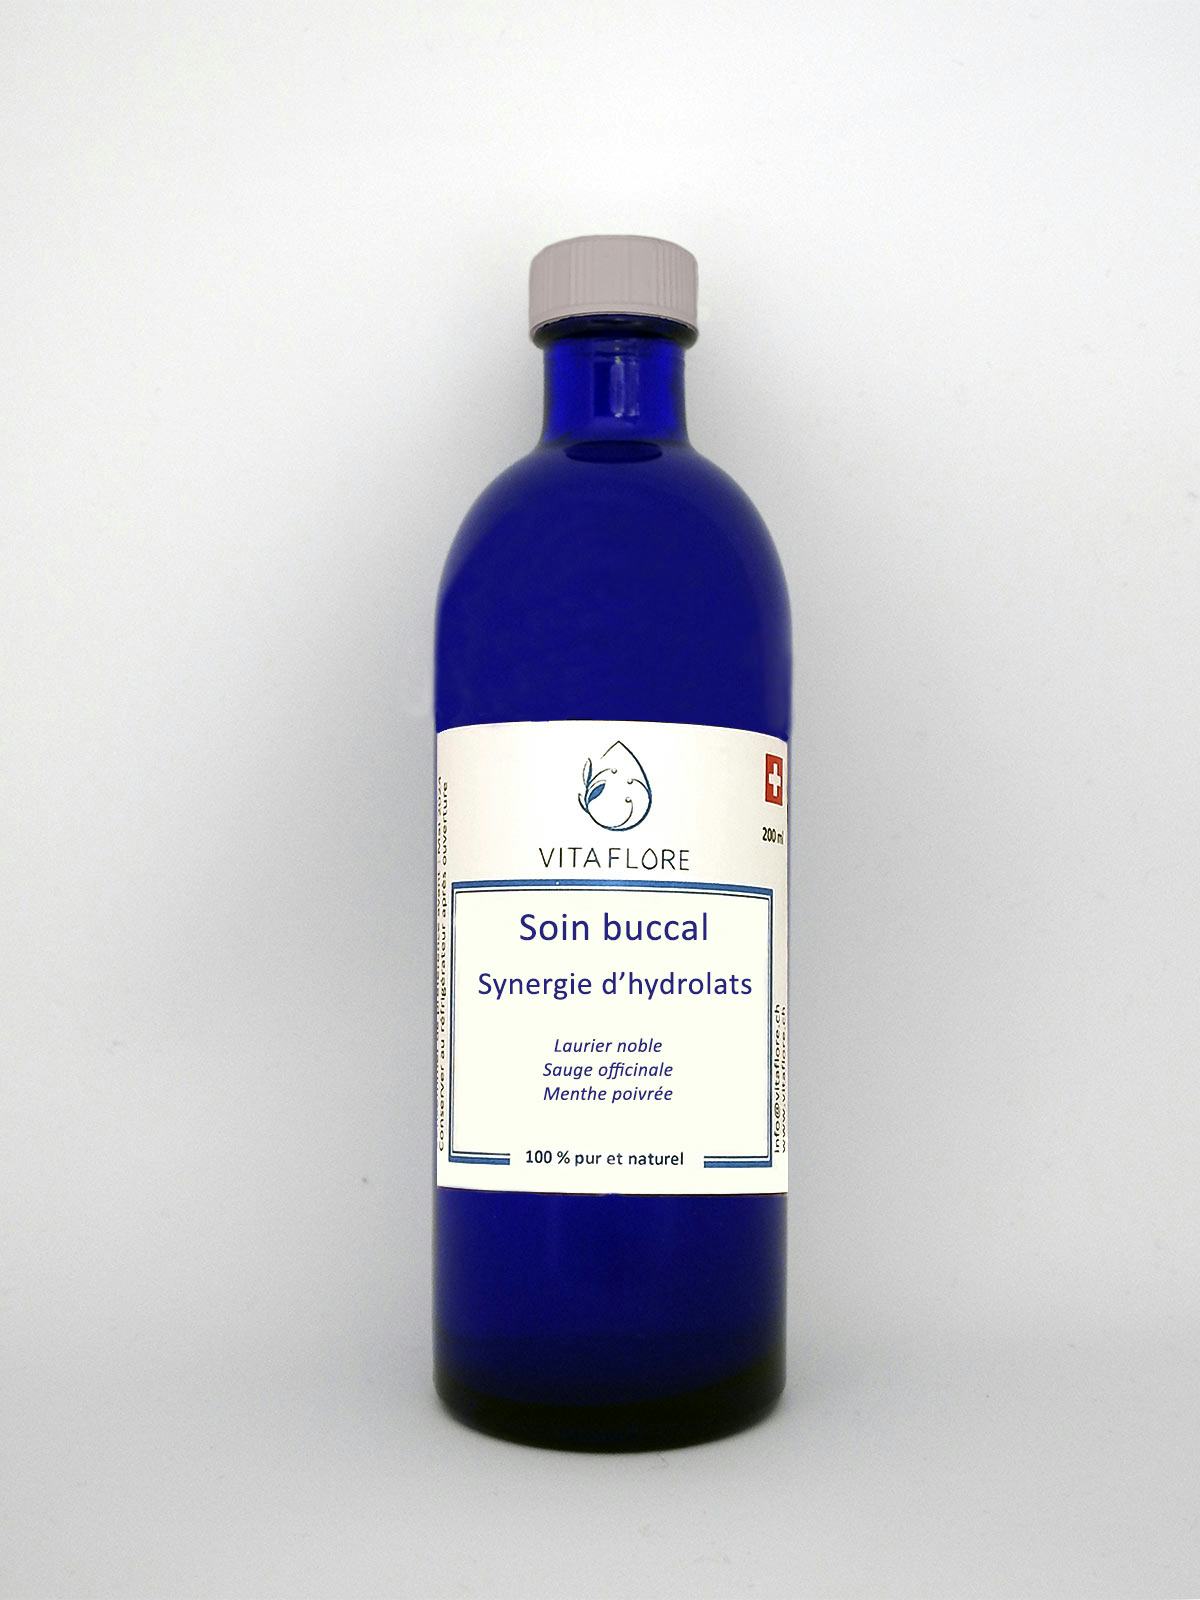 Synergie d’hydrolats – Soin buccal, handwerkliches Produkt für den Direktverkauf in der Schweiz